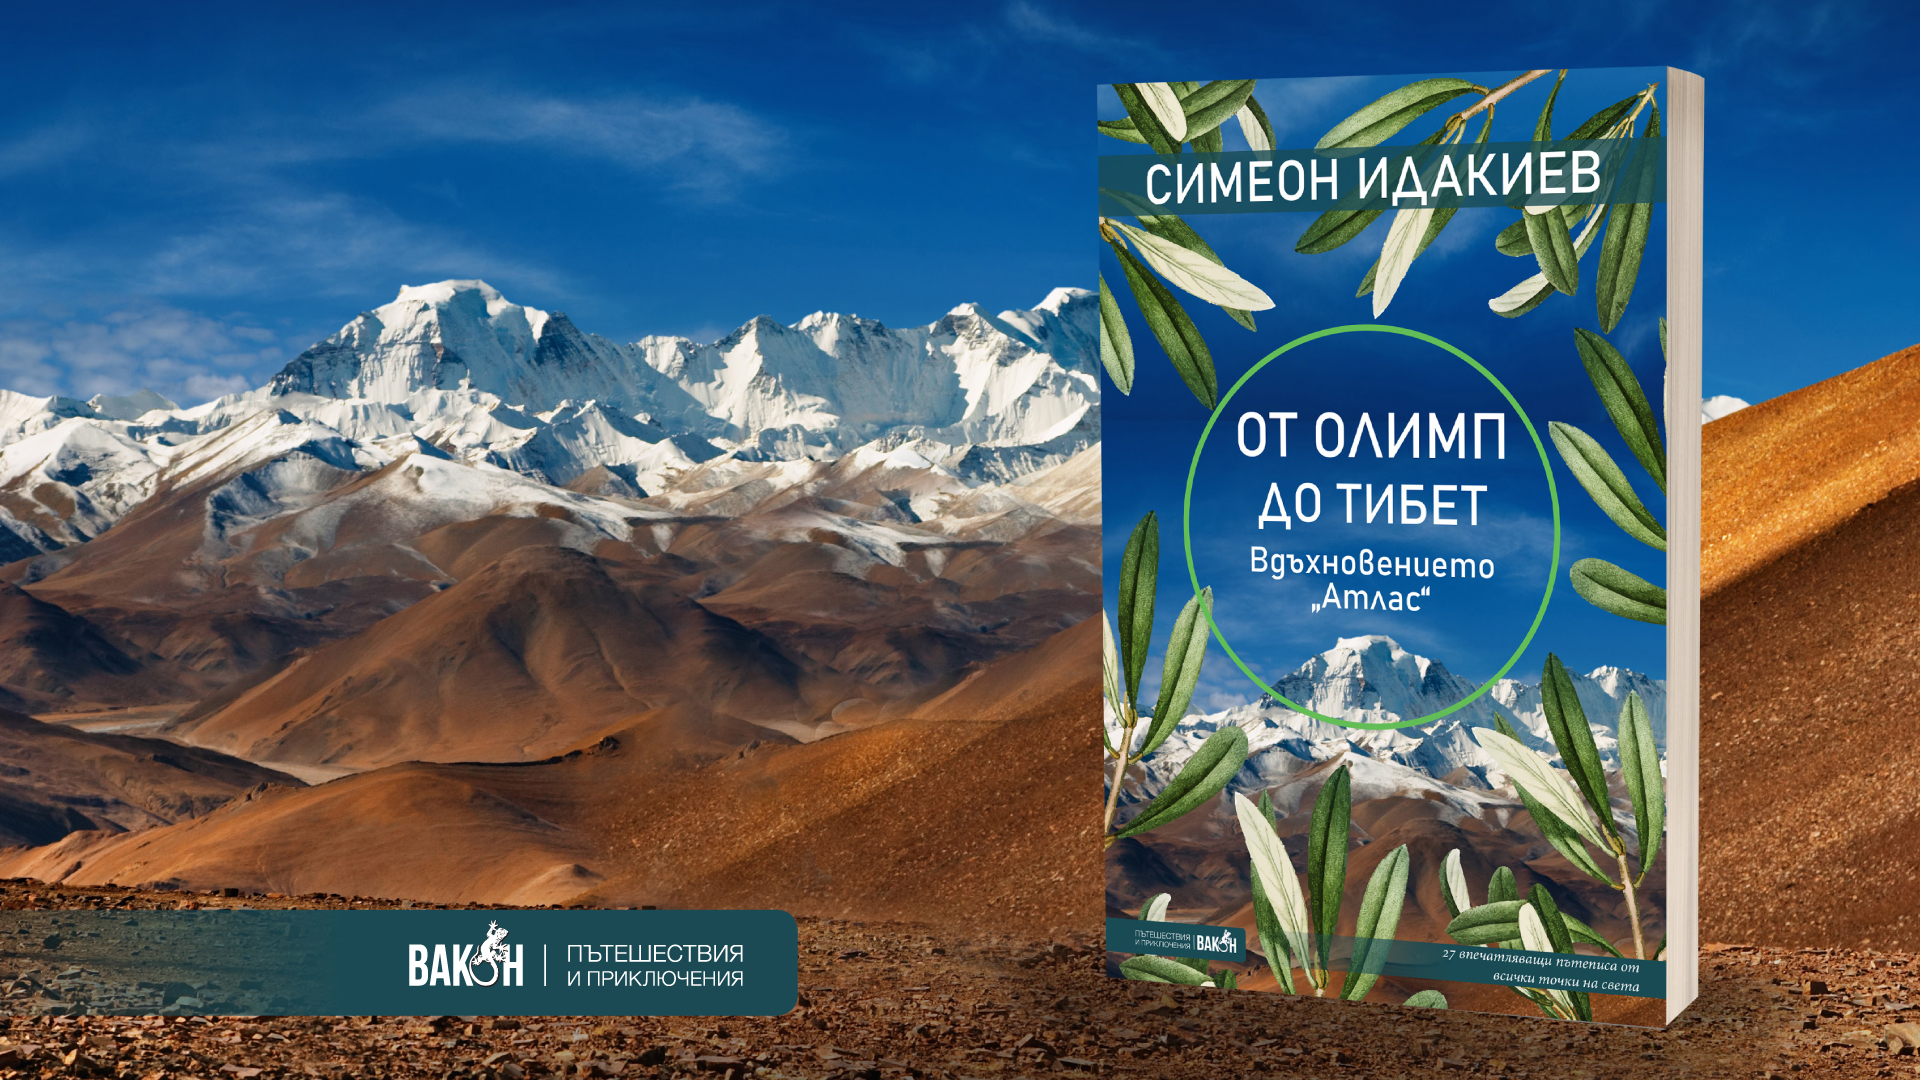 Симеон Идакиев: "﻿От Олимп до Тибет"